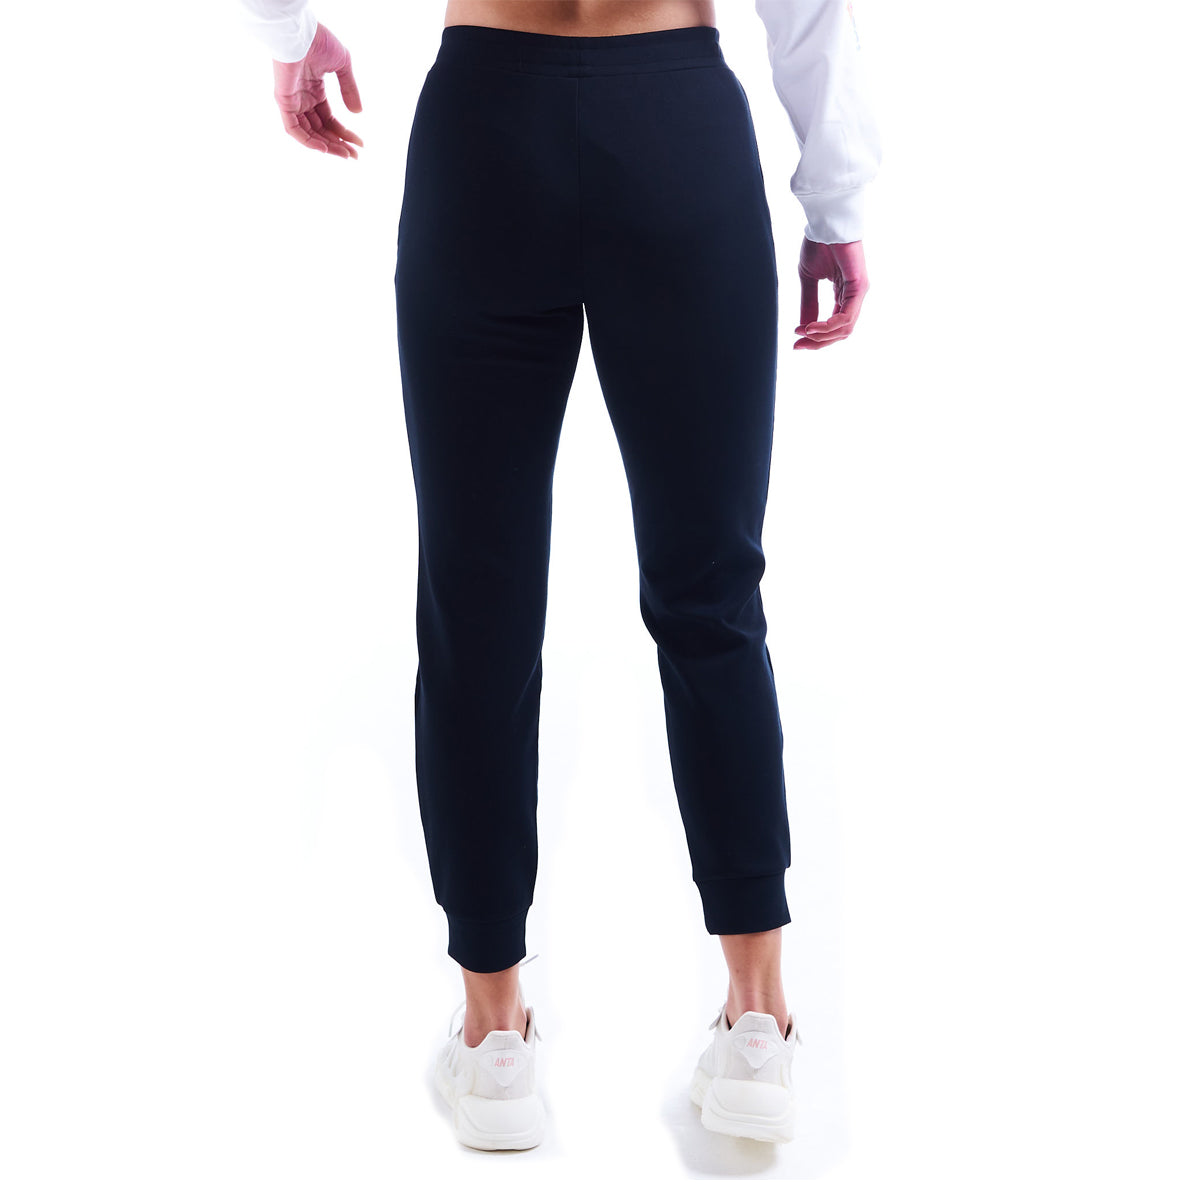 Anta Comfort Casual Sweatpants For Women, Black